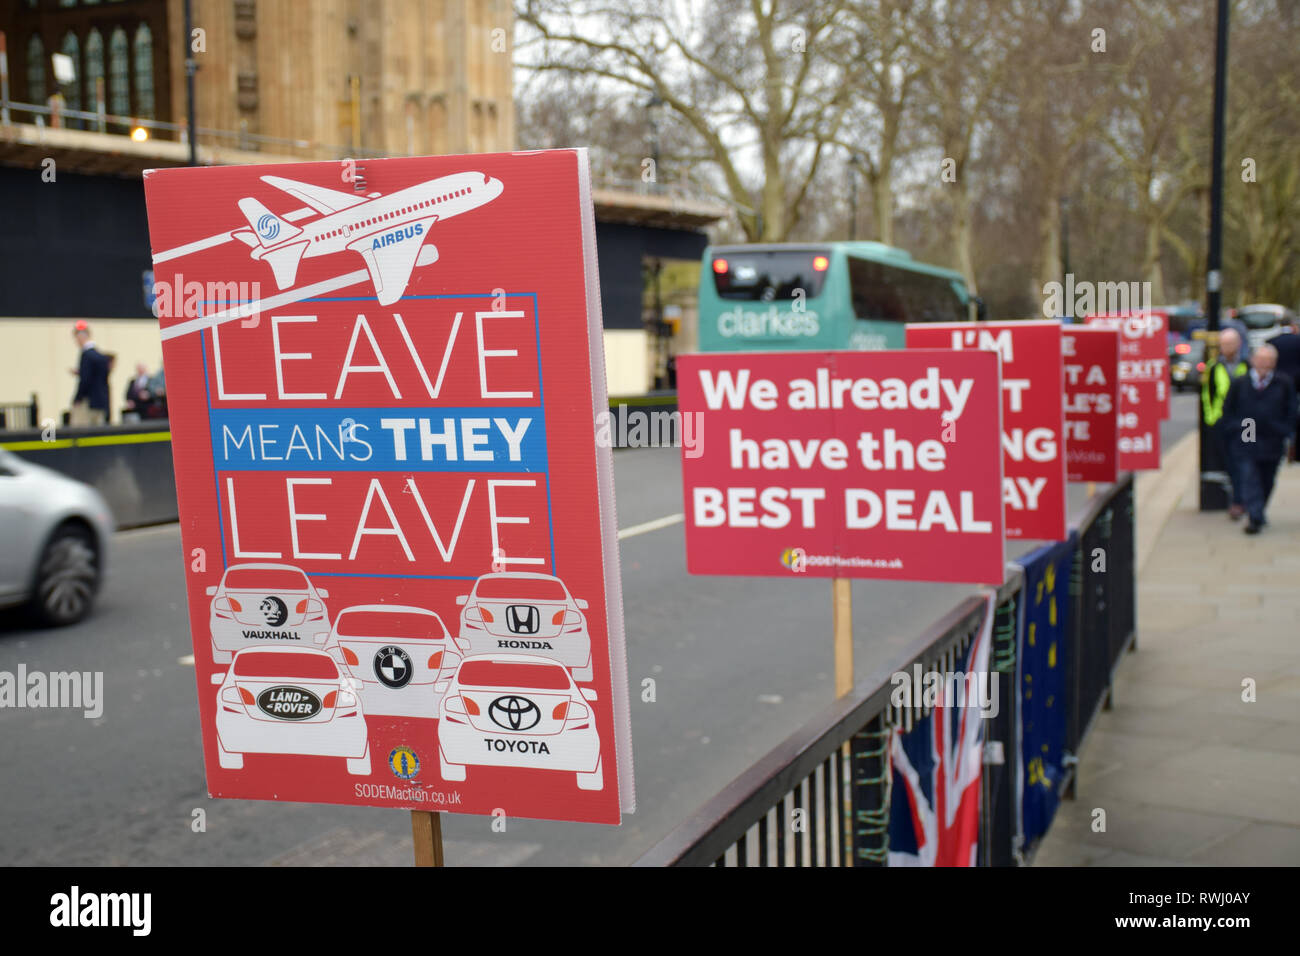 Parlamentare quotidiano protesta da parte di SODEM - Stand di Defiance Movimento Europeo che è stato iniziato da Stephen Bray su 2017 in segno di protesta a Brexit. Ogni giorno Foto Stock